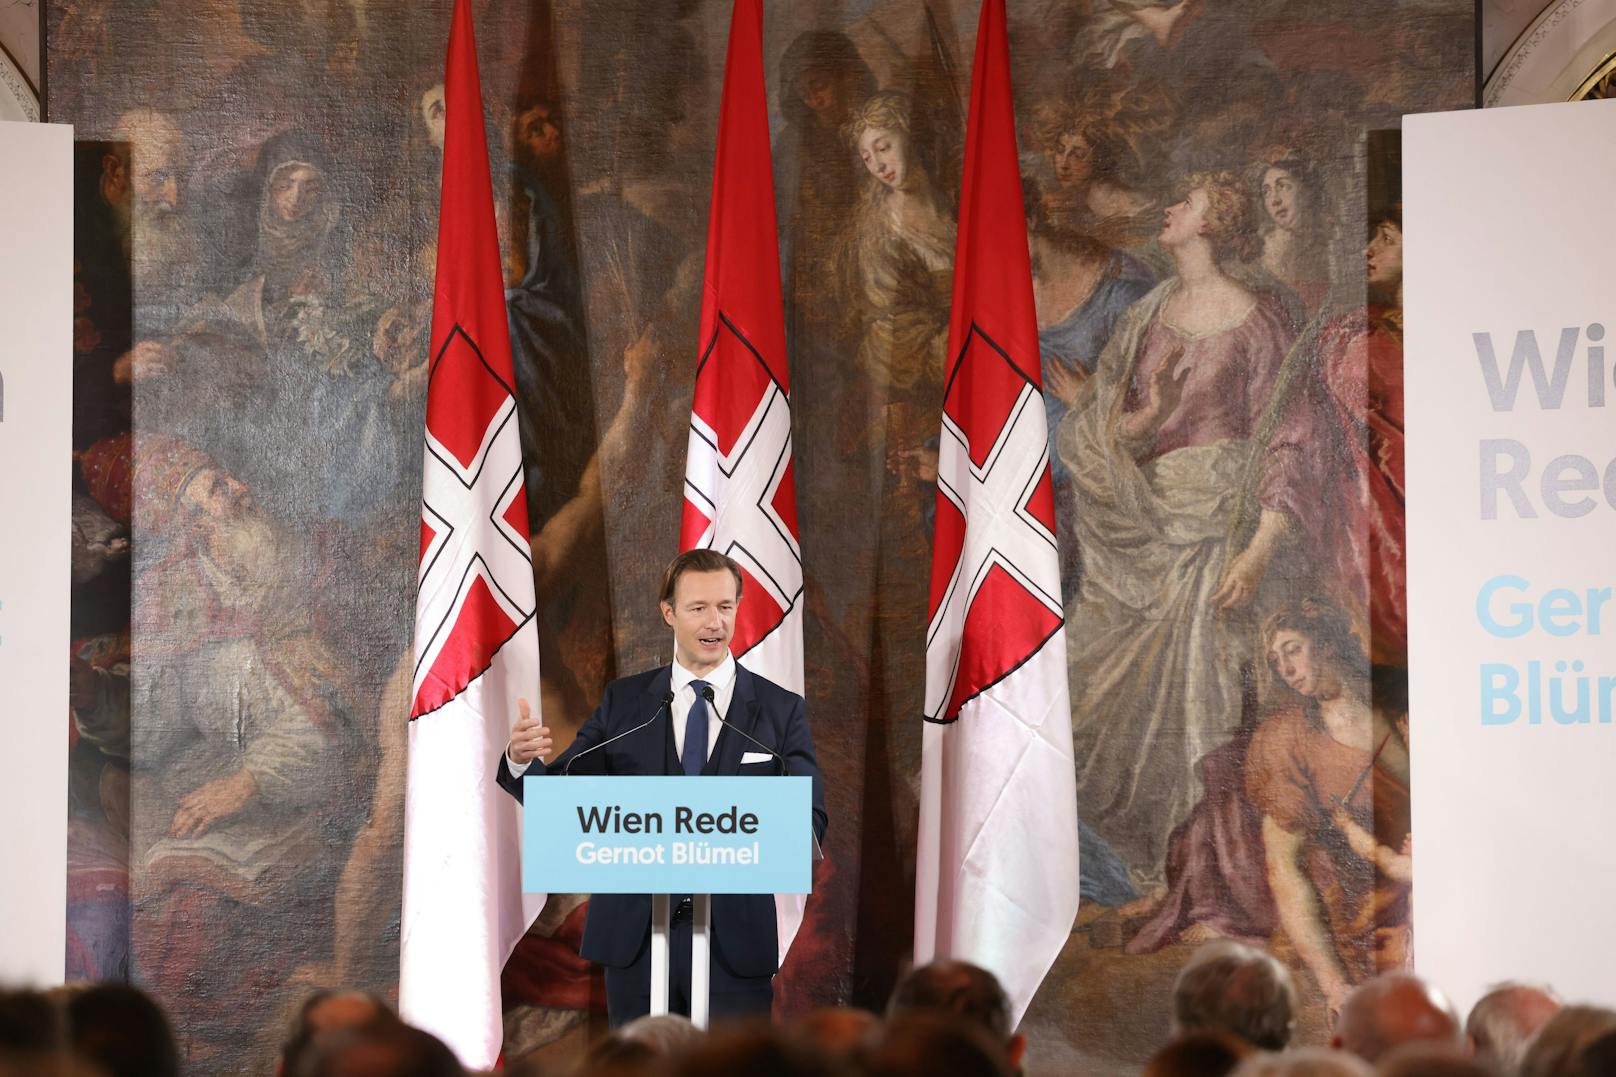 Gernot Blümel bei seiner "Rede für Wien" am 20. Oktober 2021.